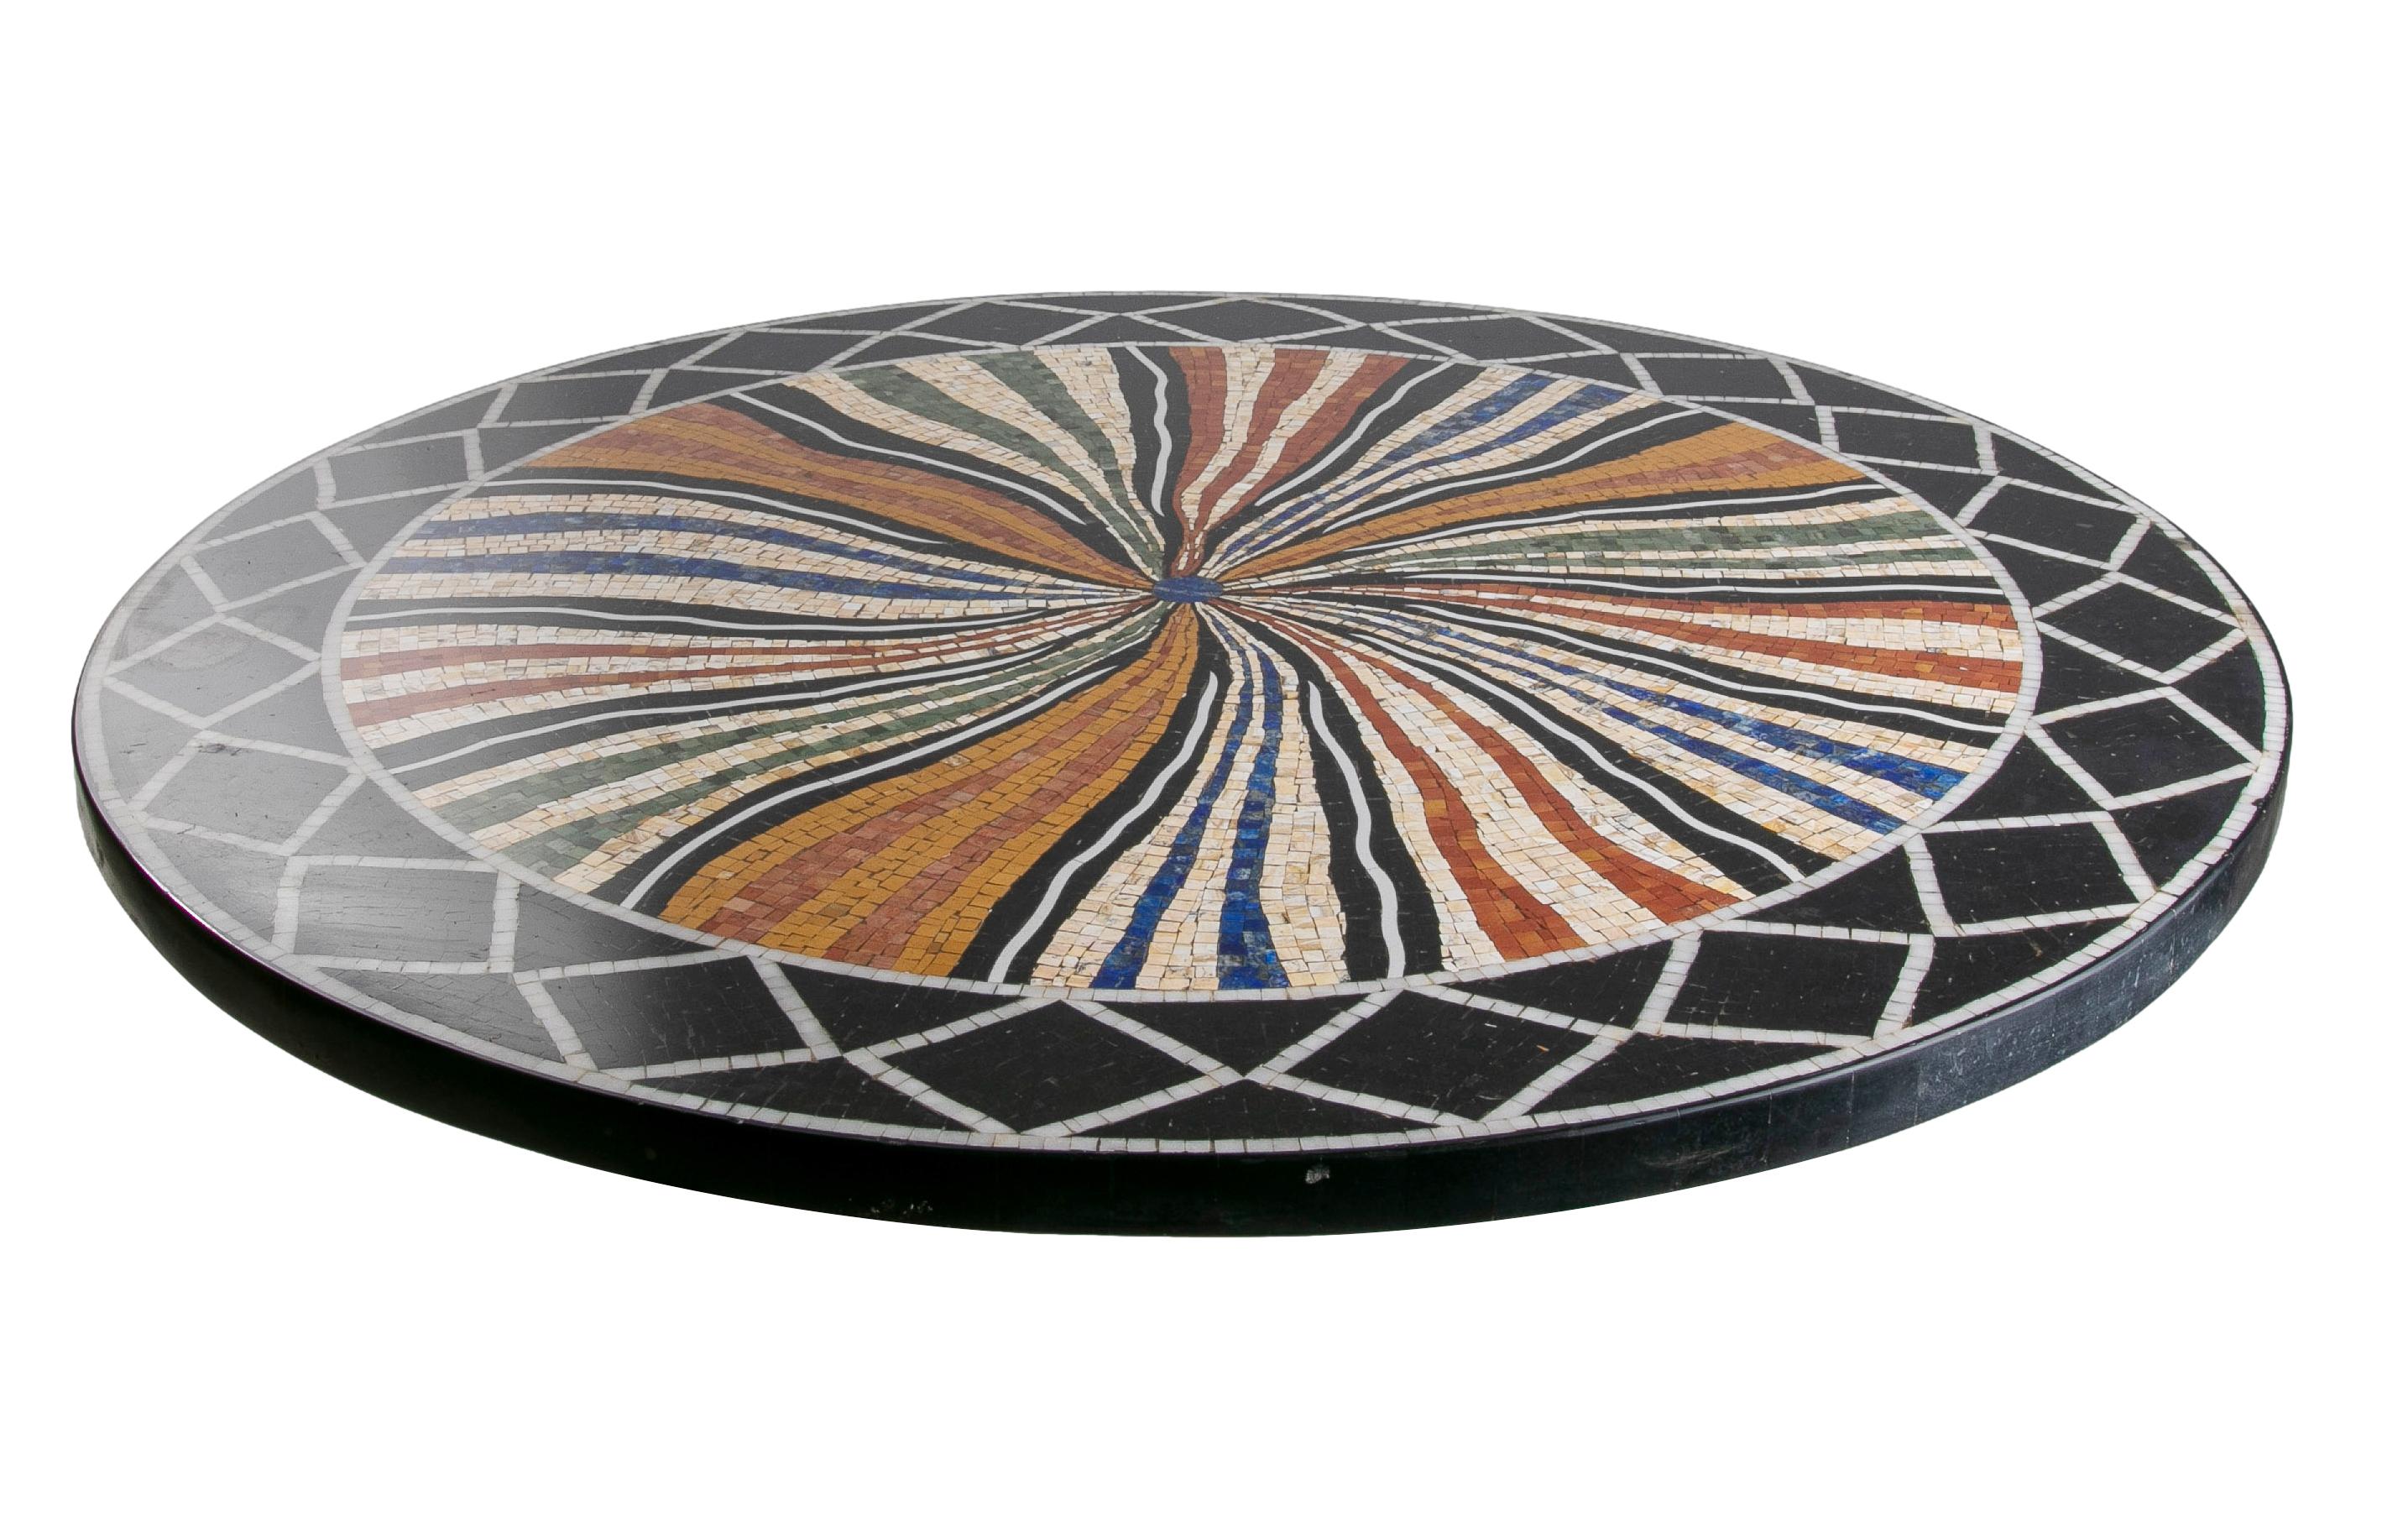 Handgefertigte runde Marmortischplatte aus spanischem klassisch-römischem Mosaik der 1990er Jahre mit Lapislazuli-Halbedelsteinen und einer Auswahl an farbigen Marmorsteinen.